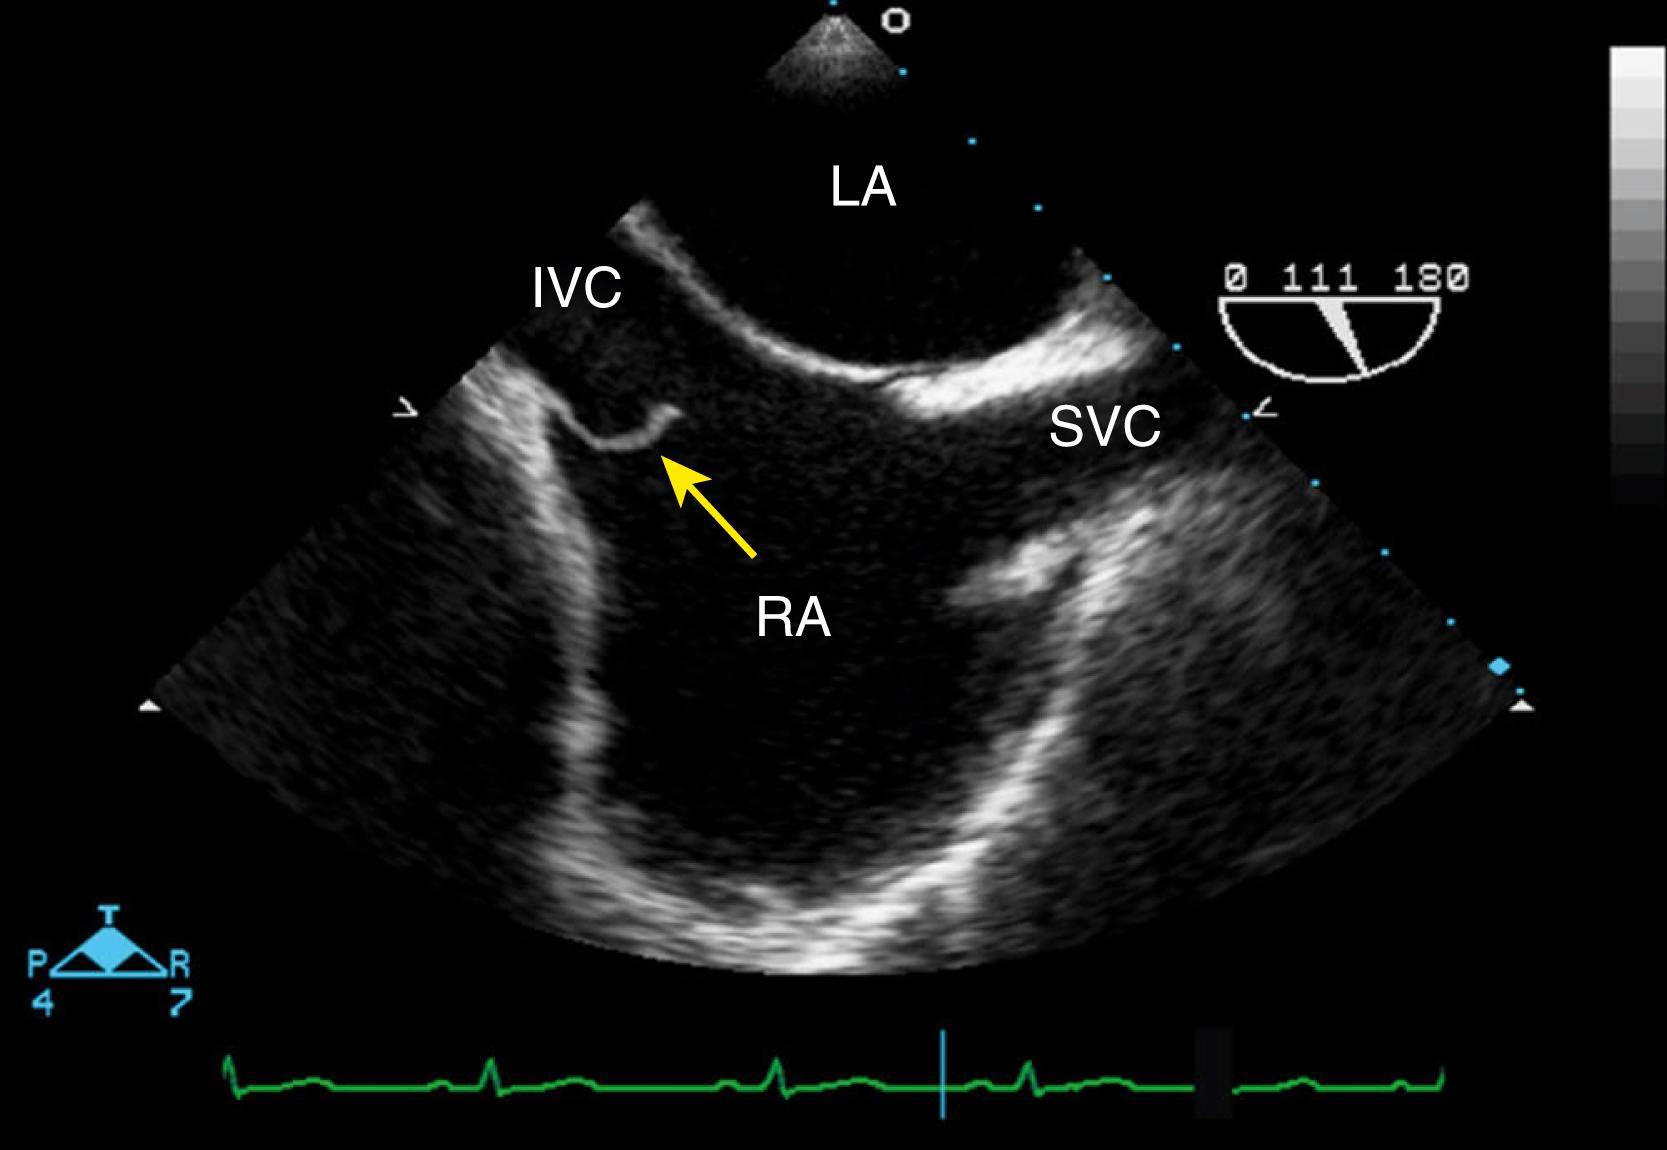 Figure 129.2, Transesophageal echocardiographic bicaval view illustrates a prominent eustachian valve (yellow arrow) in the right atrium (RA) at the inlet of the inferior vena cava (IVC). LA, Left atrium; SVC, superior vena cava.